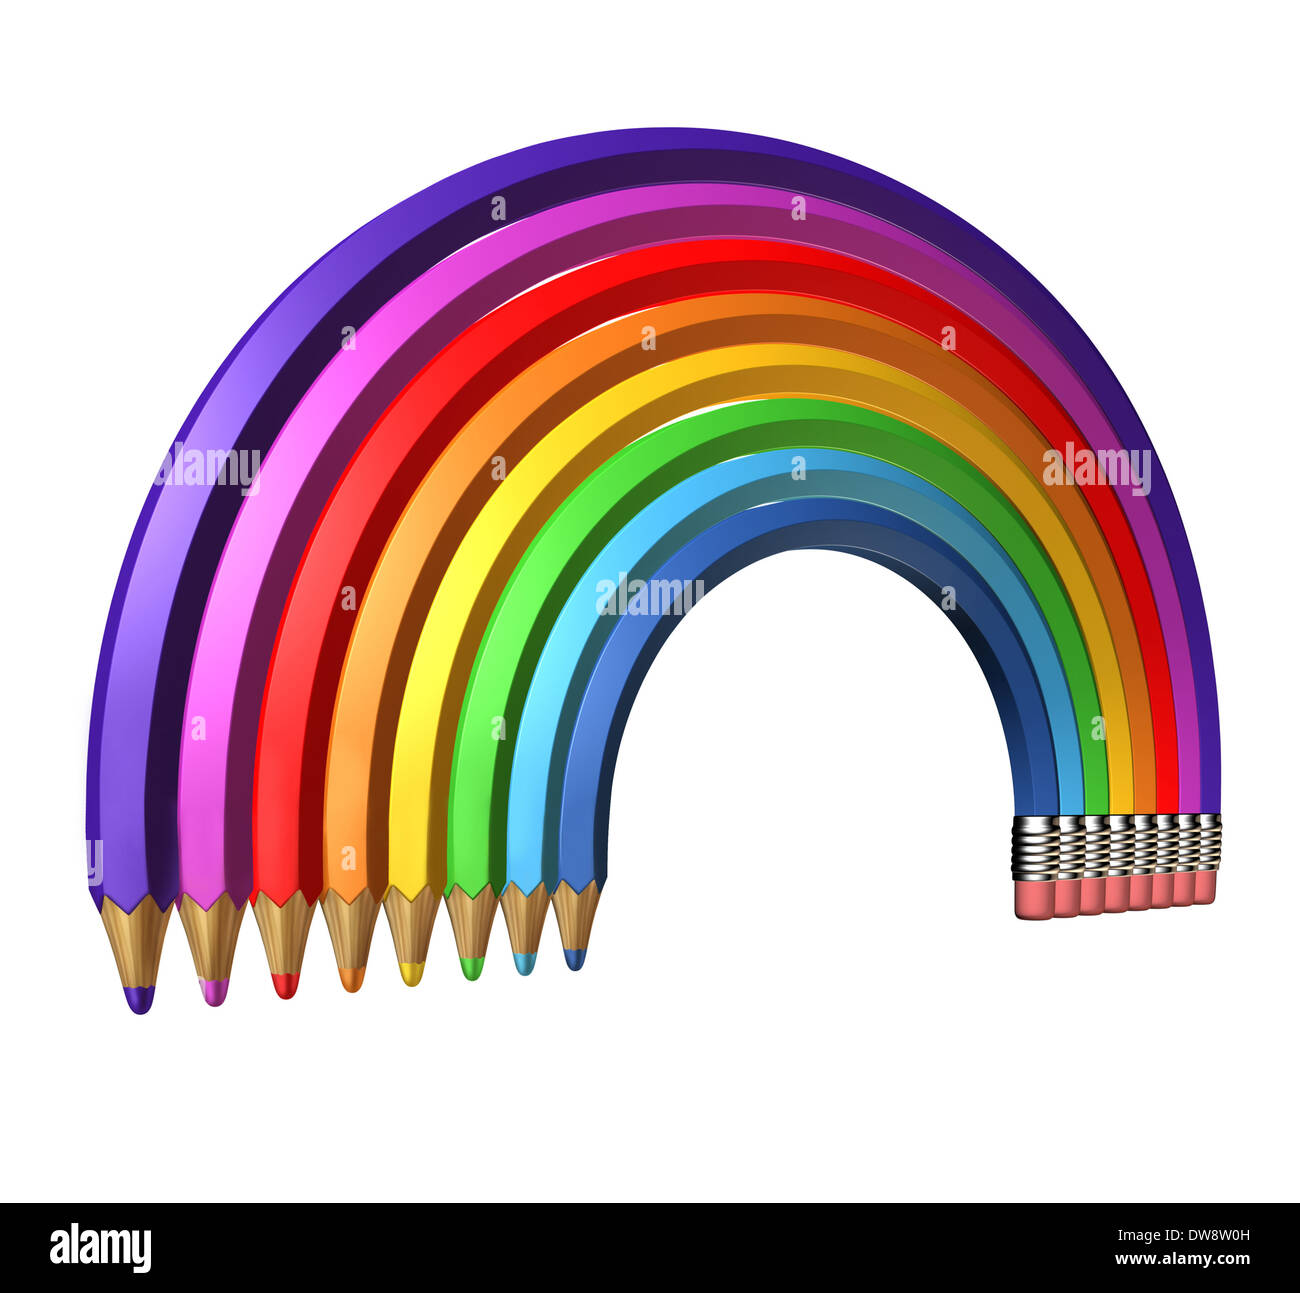 Arc-en-ciel crayon avec un groupe de crayons de couleur en forme d'un spectre de couleurs dans une dynamique d'apprentissage en trois dimensions symbole de la créativité et de l'école d'expression design isolé sur un fond blanc. Banque D'Images